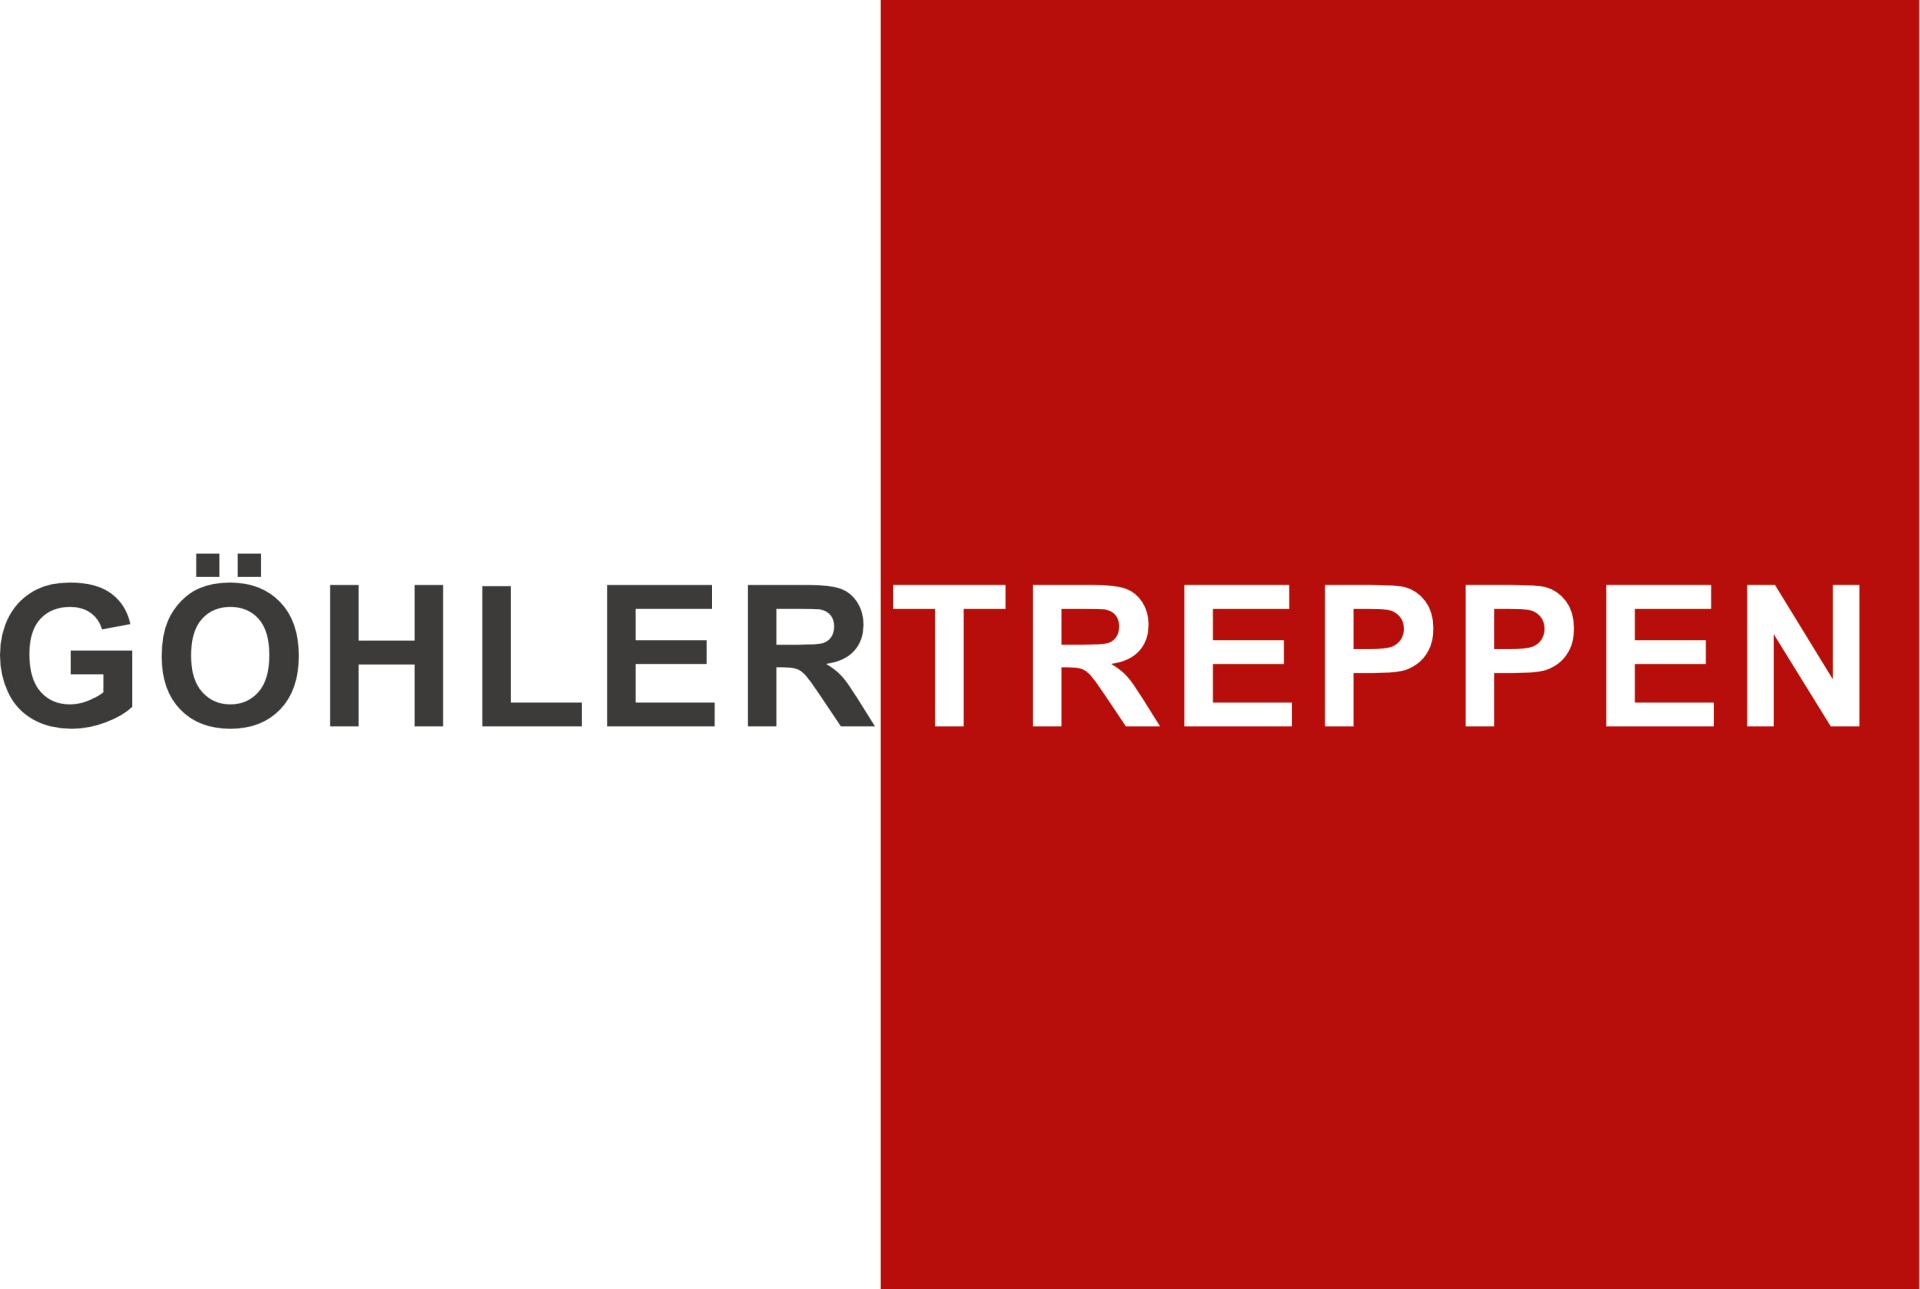 GöhlerTreppen GmbH & Co. KG